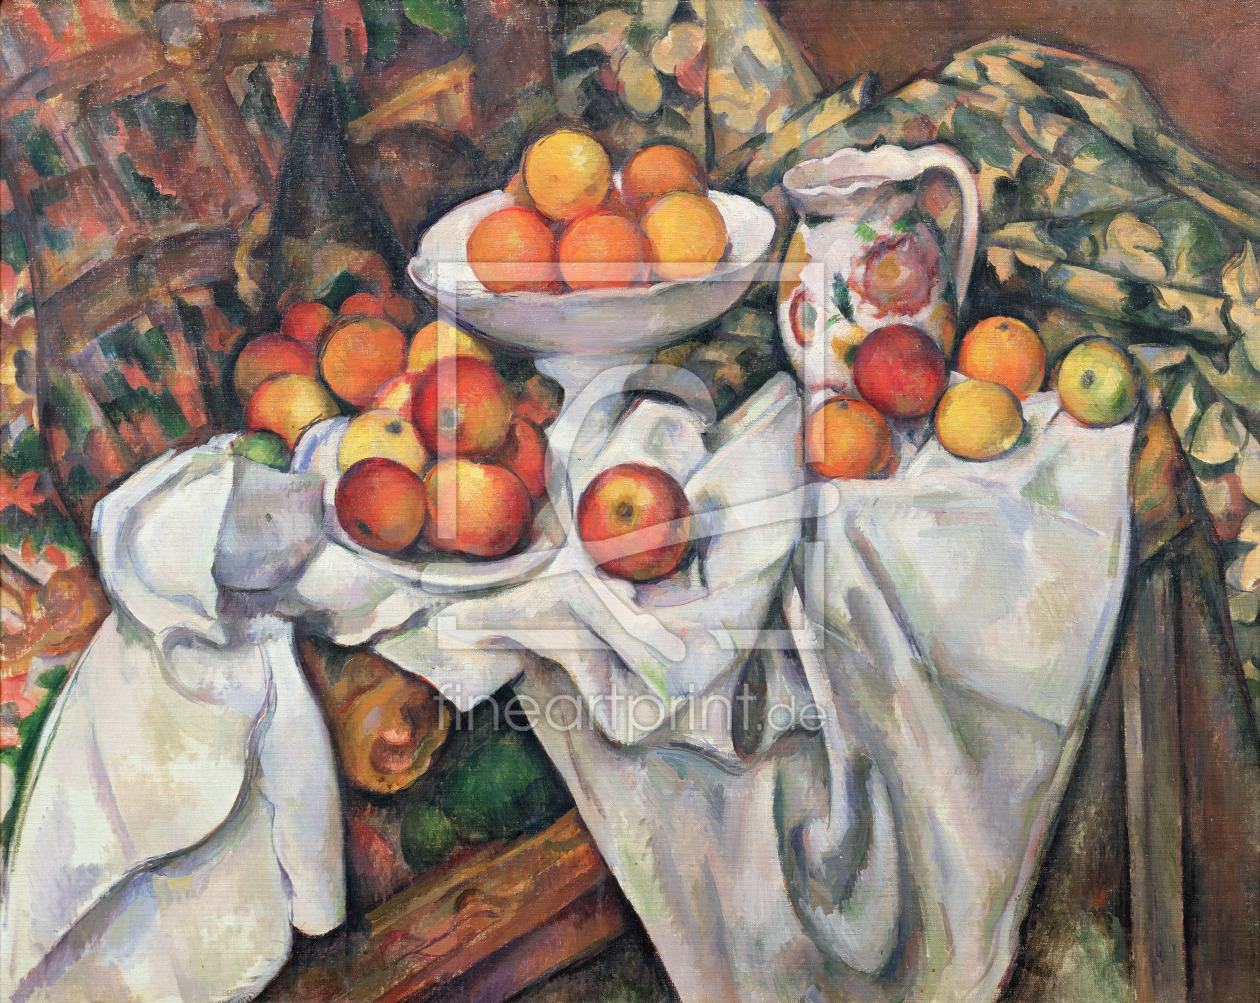 Bild-Nr.: 31002189 Apples and Oranges, 1895-1900 erstellt von Cezanne, Paul